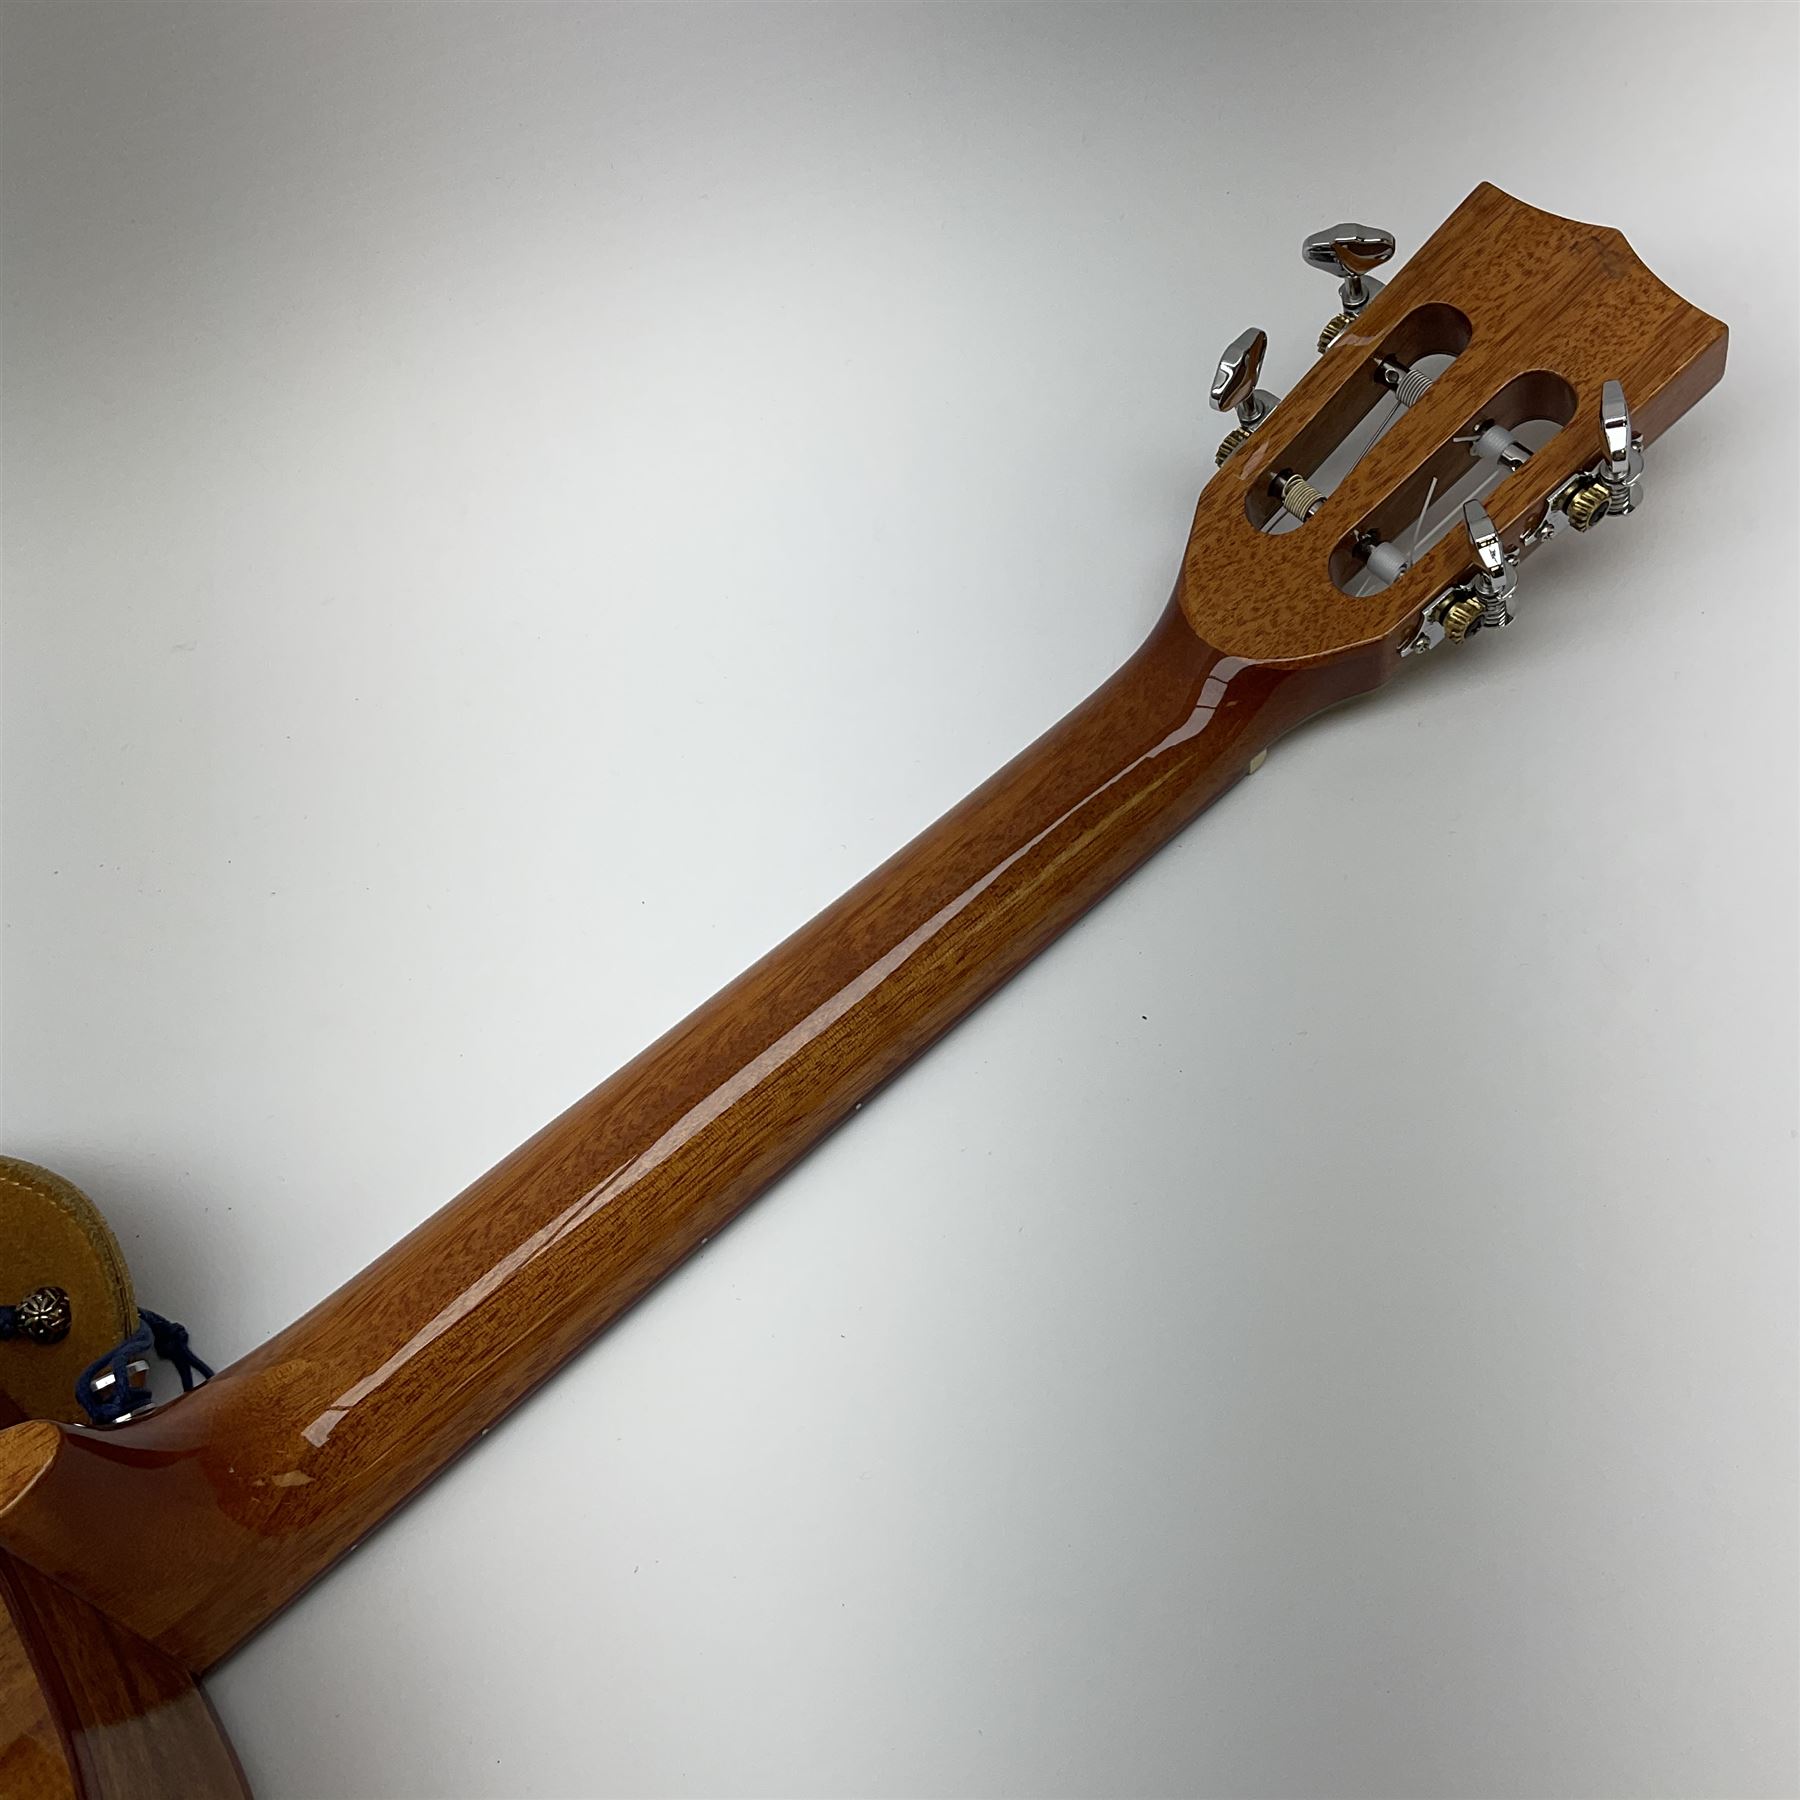 Modern Kala ukulele with acacia back and sides - Image 11 of 12